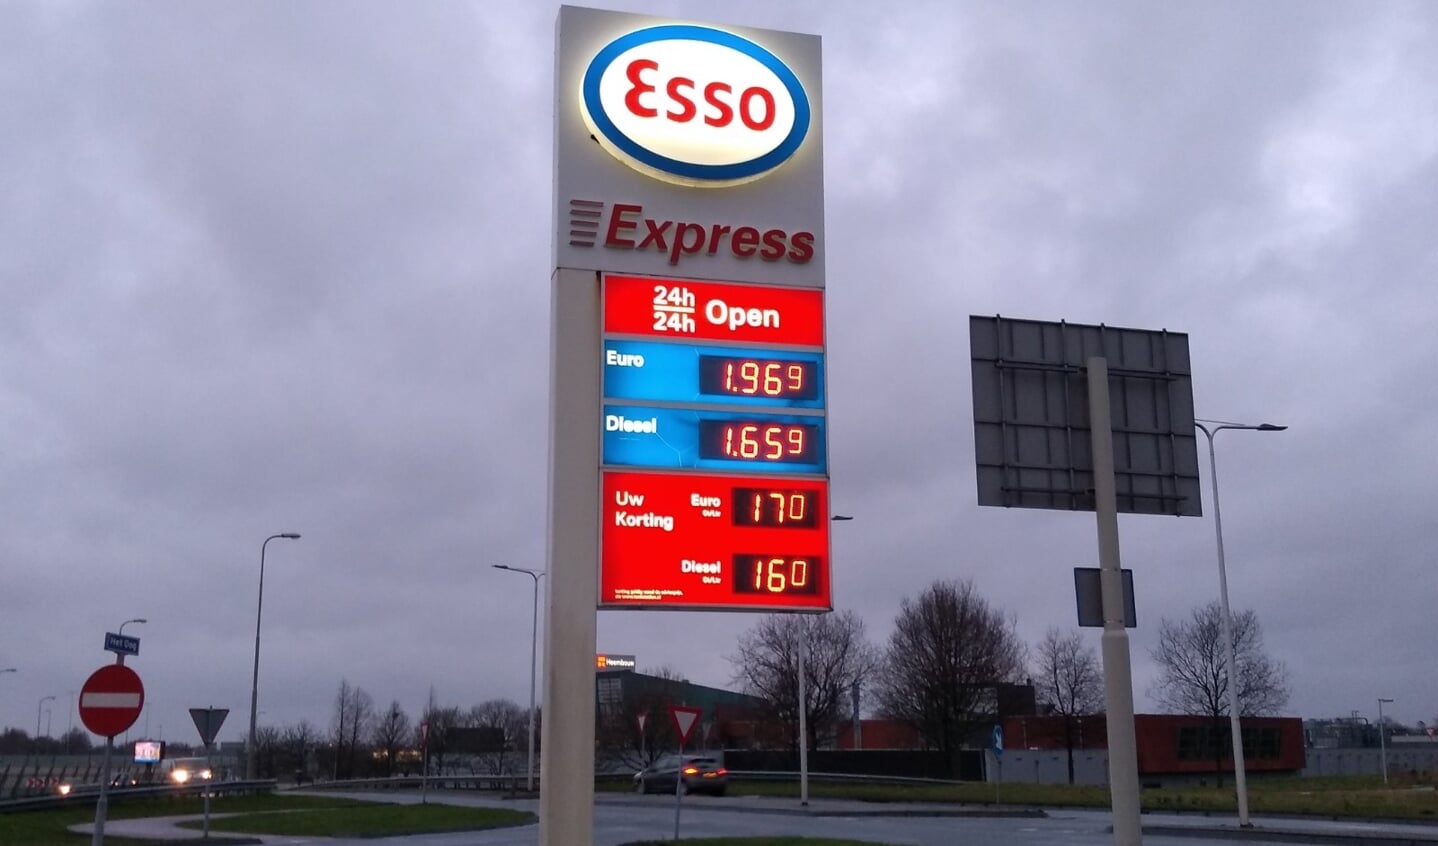 De brandstofprijzen zijn recent opnieuw gestegen naar recordhoogte. Esso staat zowel hoog in de lijsten van de goedkoopste als duurste stations langs de snelweg, de prijsverschillen tussen deze Esso stations zijn erg groot.